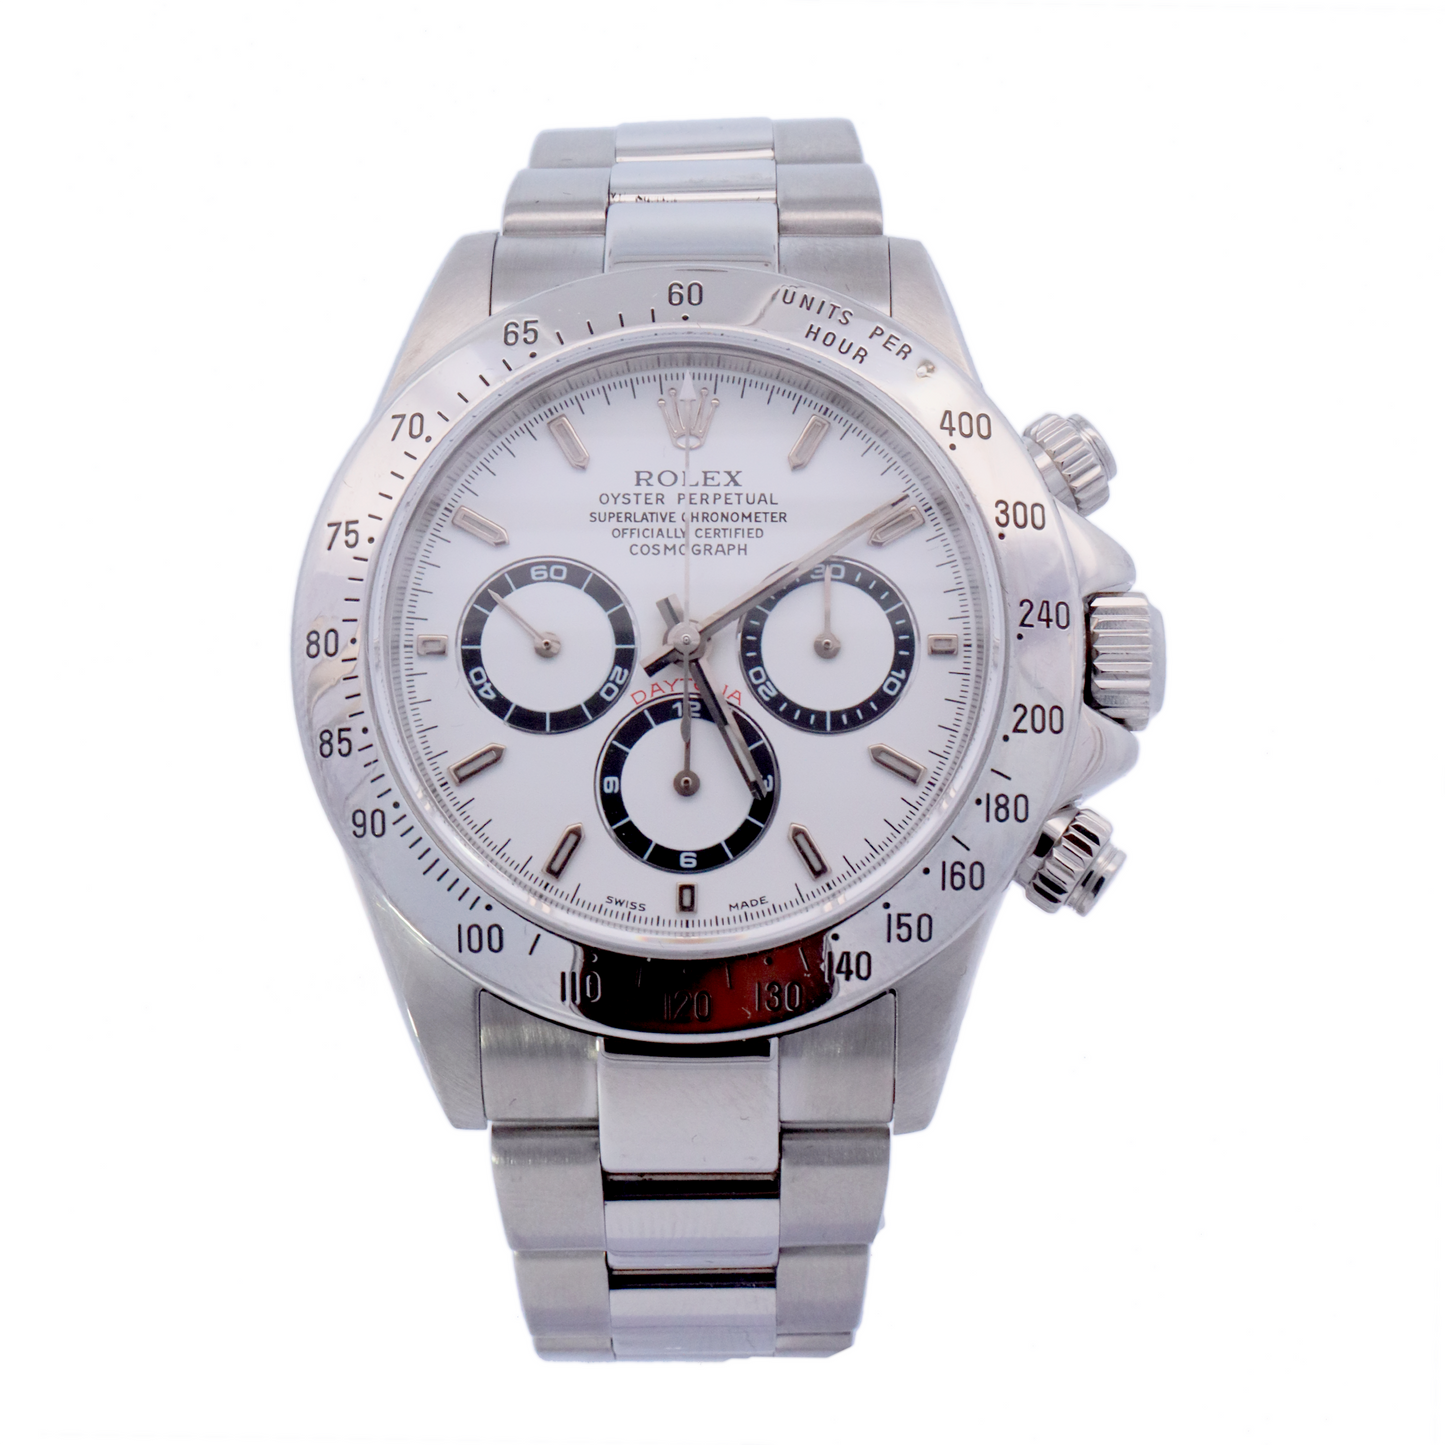 Rolex Daytona Stainless Steel 40mm White Chronograph Dial Watch | Ref# 16520 - Happy Jewelers Fine Jewelry Lifetime Warranty